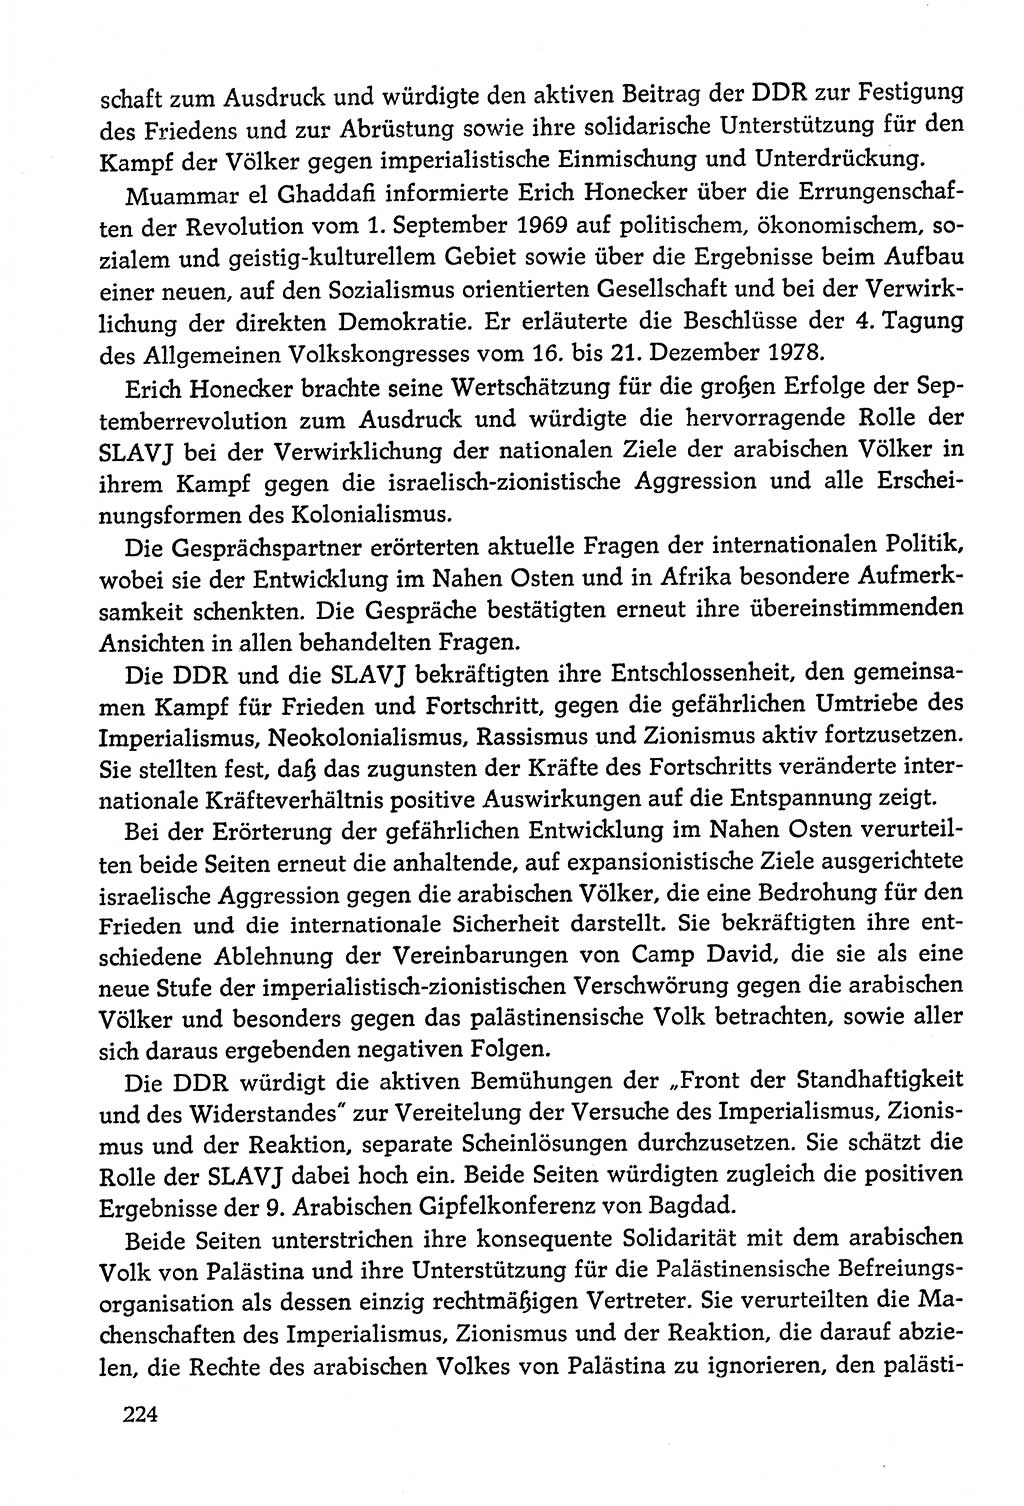 Dokumente der Sozialistischen Einheitspartei Deutschlands (SED) [Deutsche Demokratische Republik (DDR)] 1978-1979, Seite 224 (Dok. SED DDR 1978-1979, S. 224)